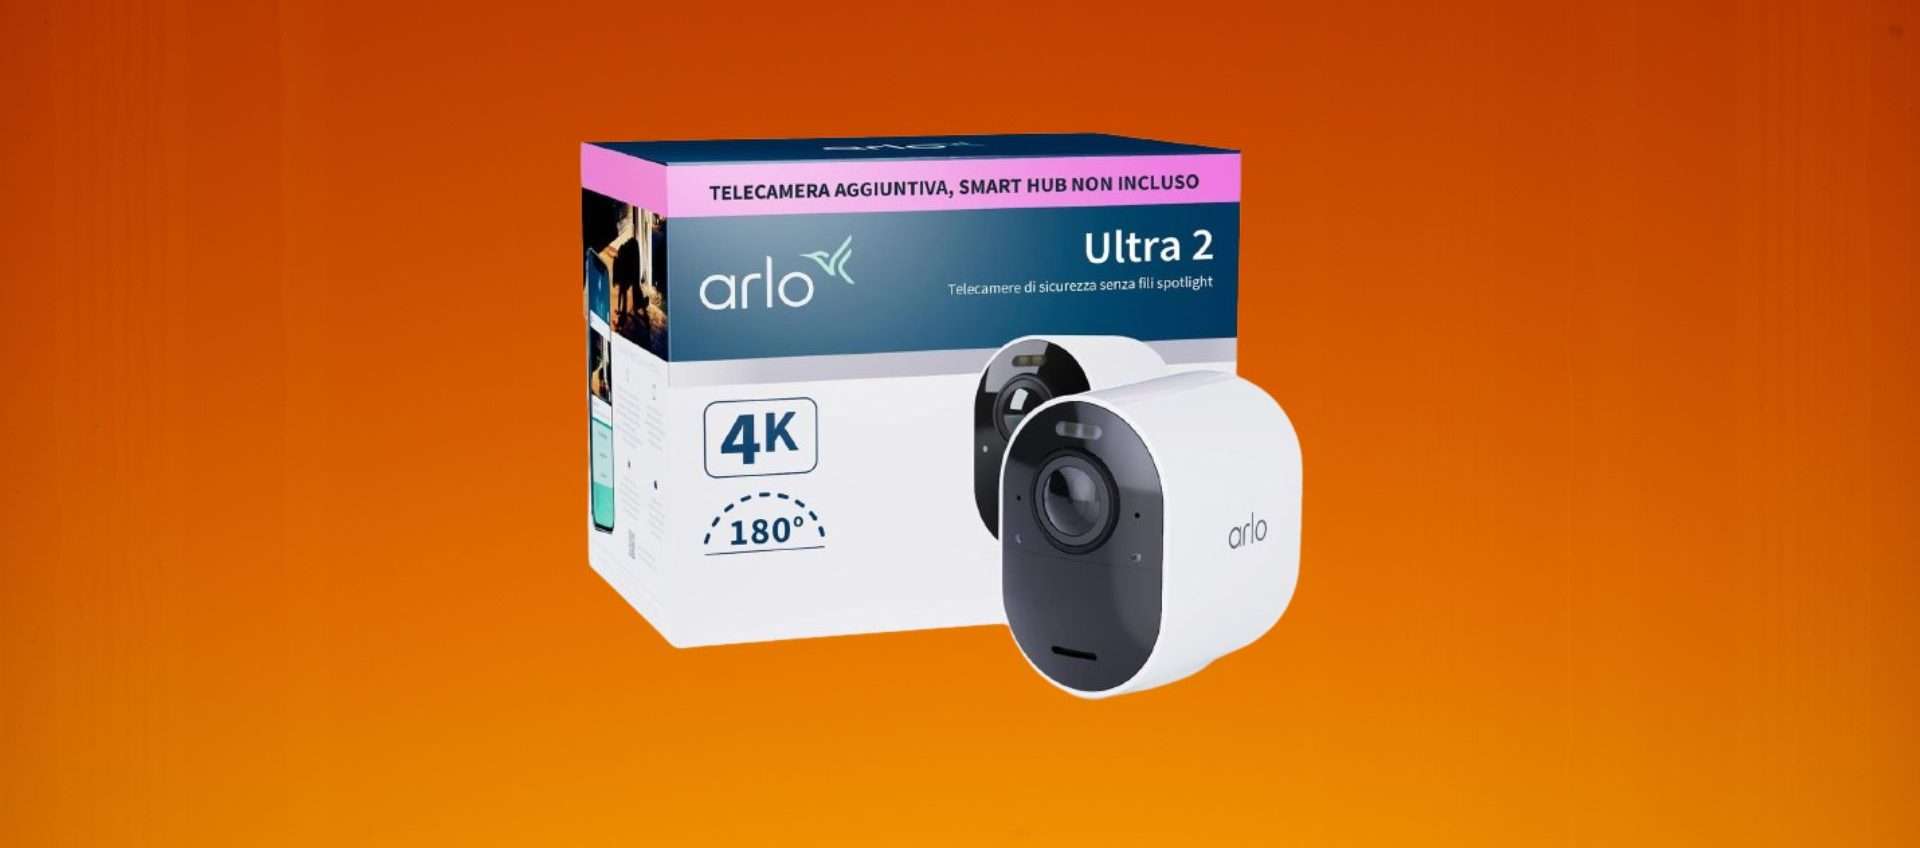 Arlo Ultra 2 in offerta su Amazon: risparmia 140€ su questa eccellente telecamera Wi-Fi per esterno